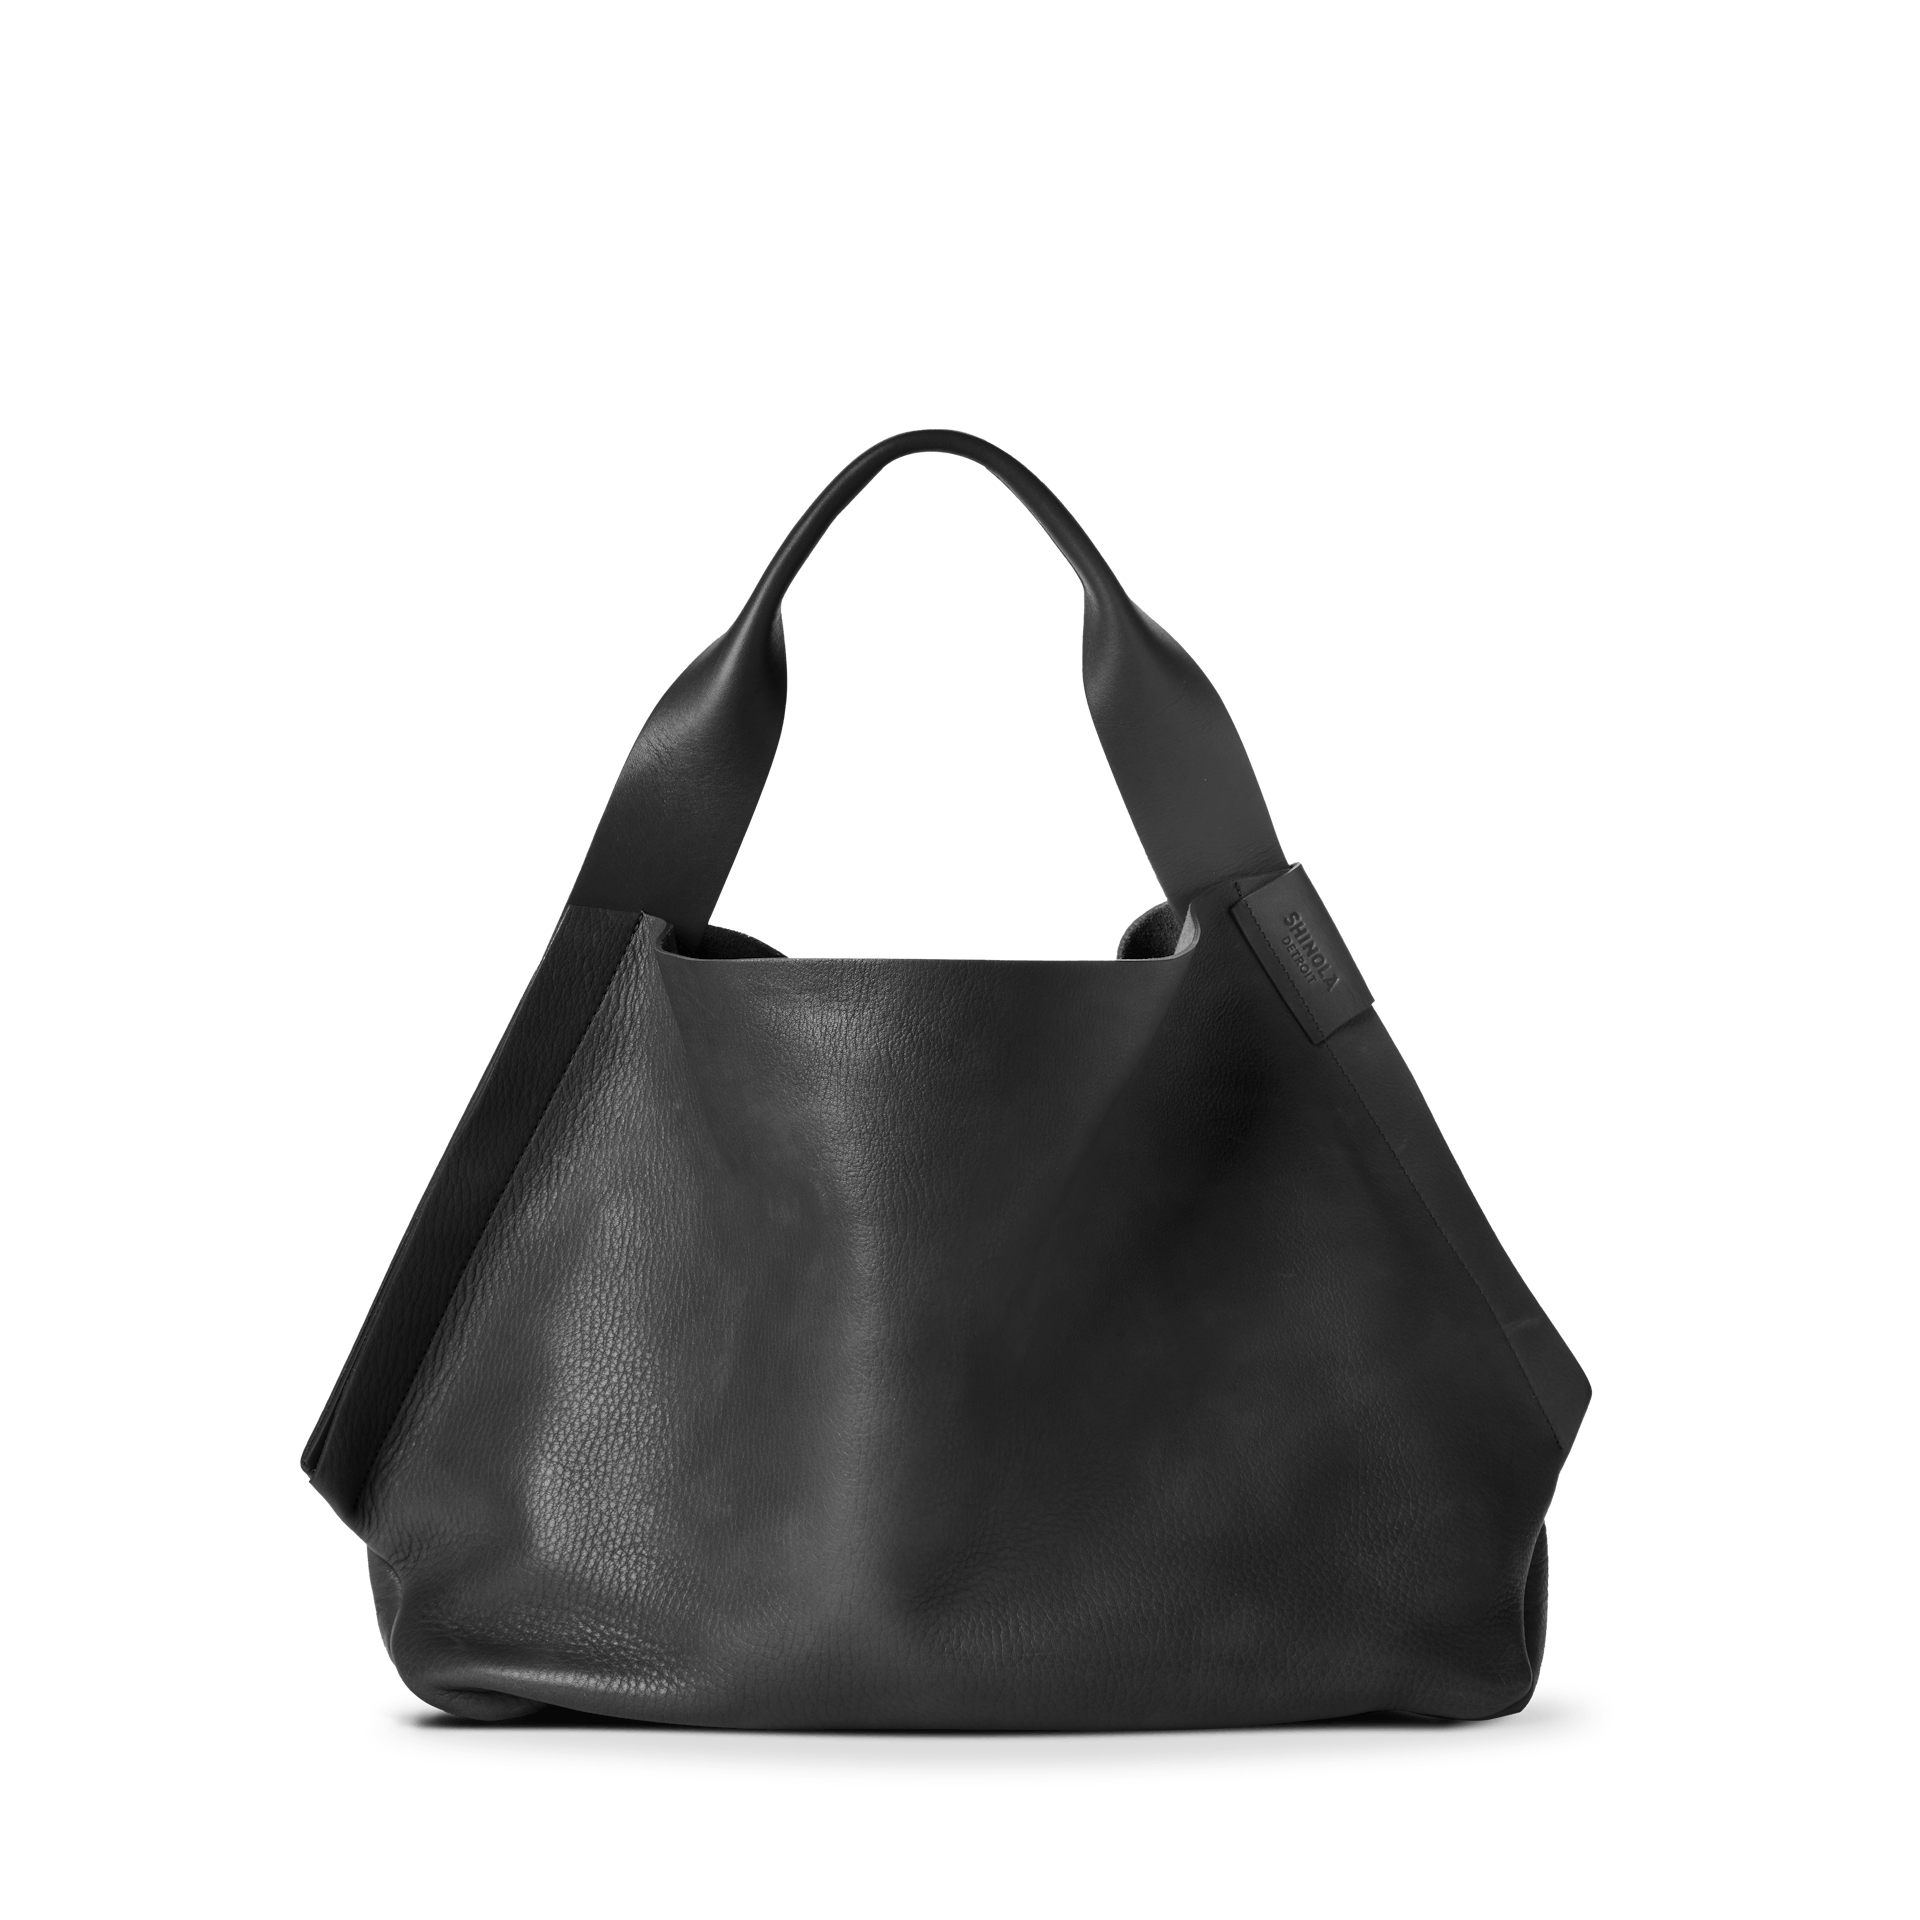 KUIU Zip Dry Bags— By Land